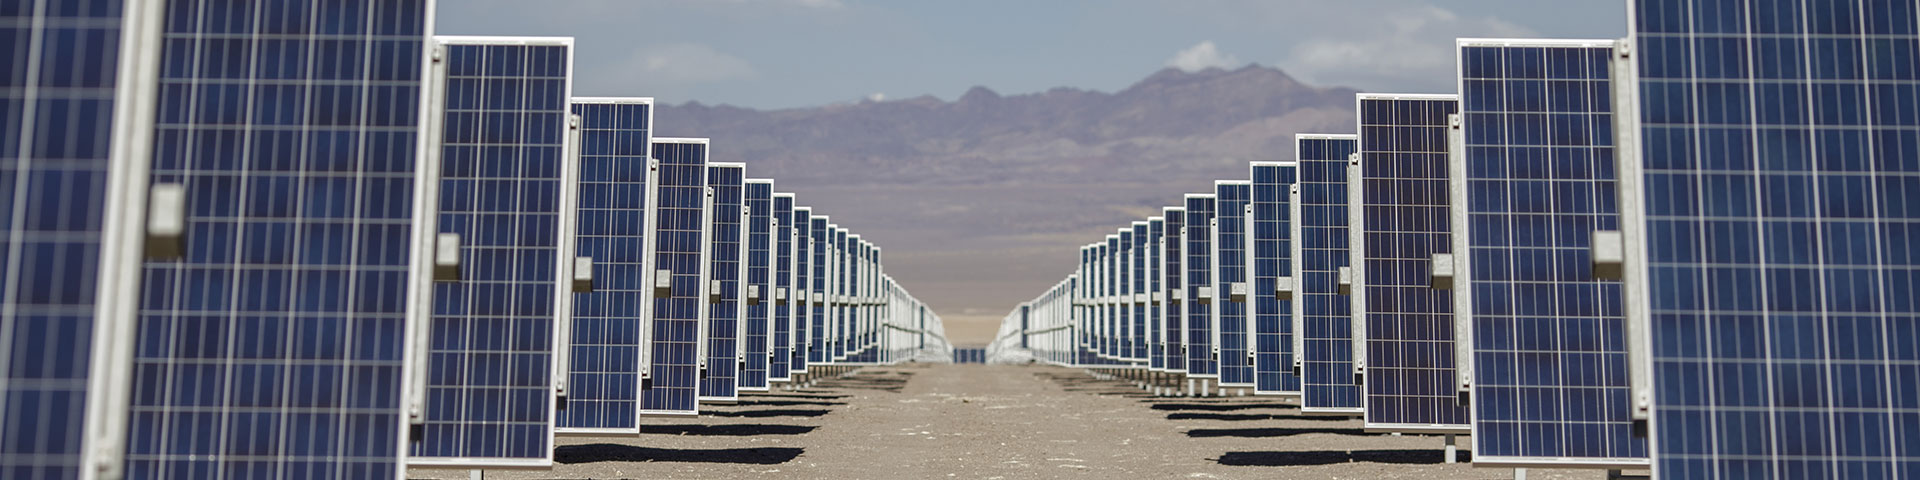 Zwei Reihen von Solarpaneelen